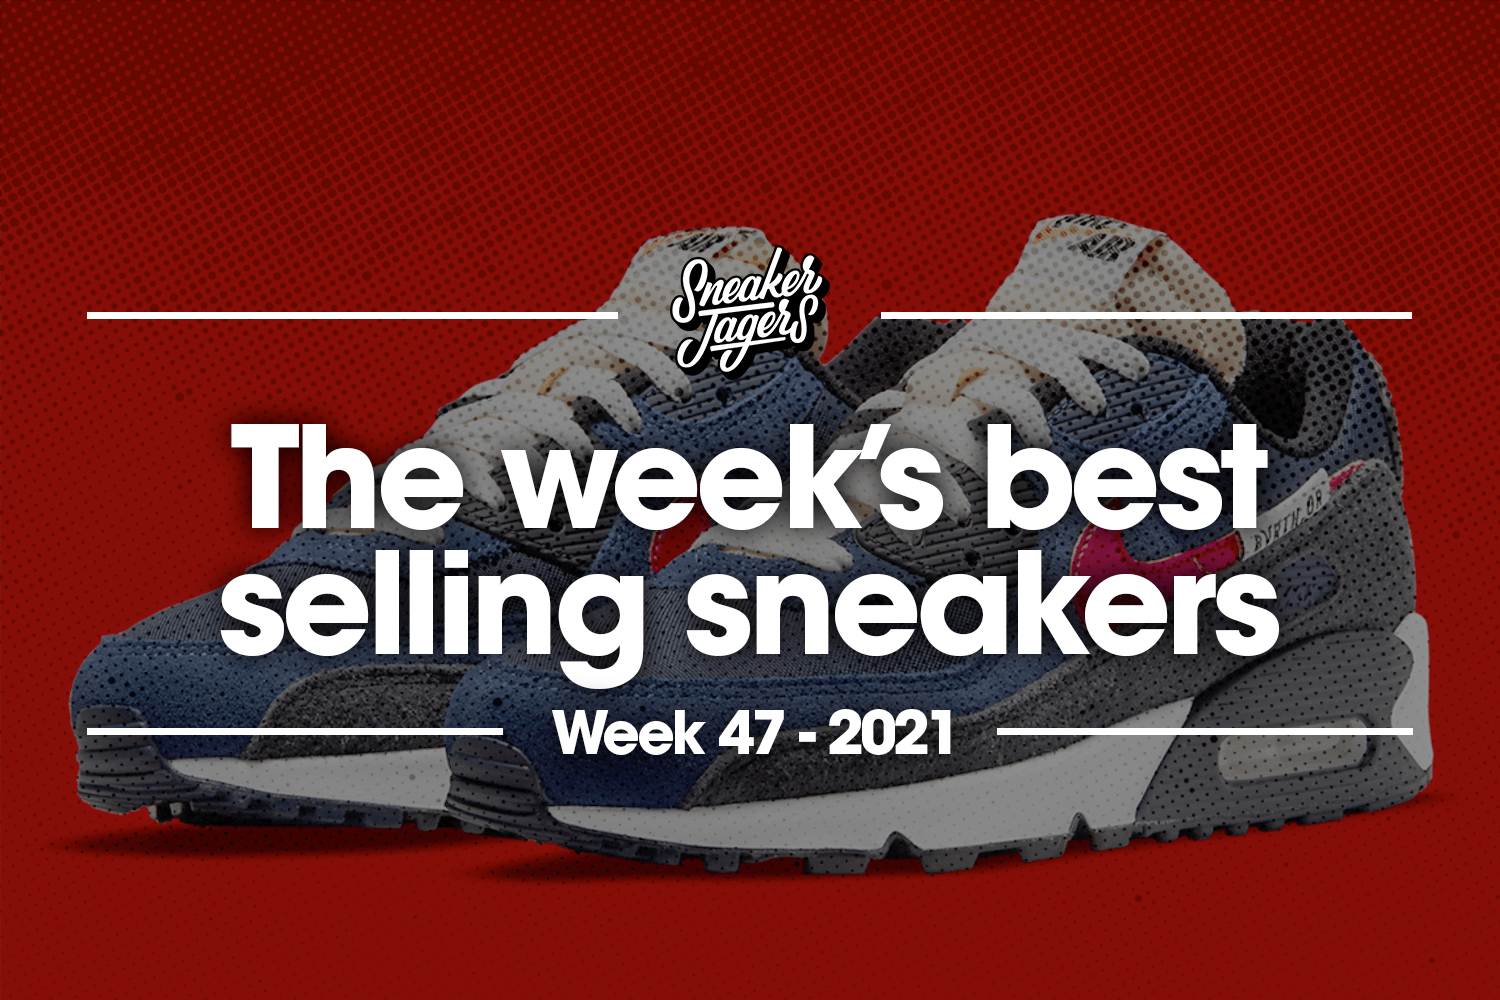 De 5 bestverkochte sneakers van week 47